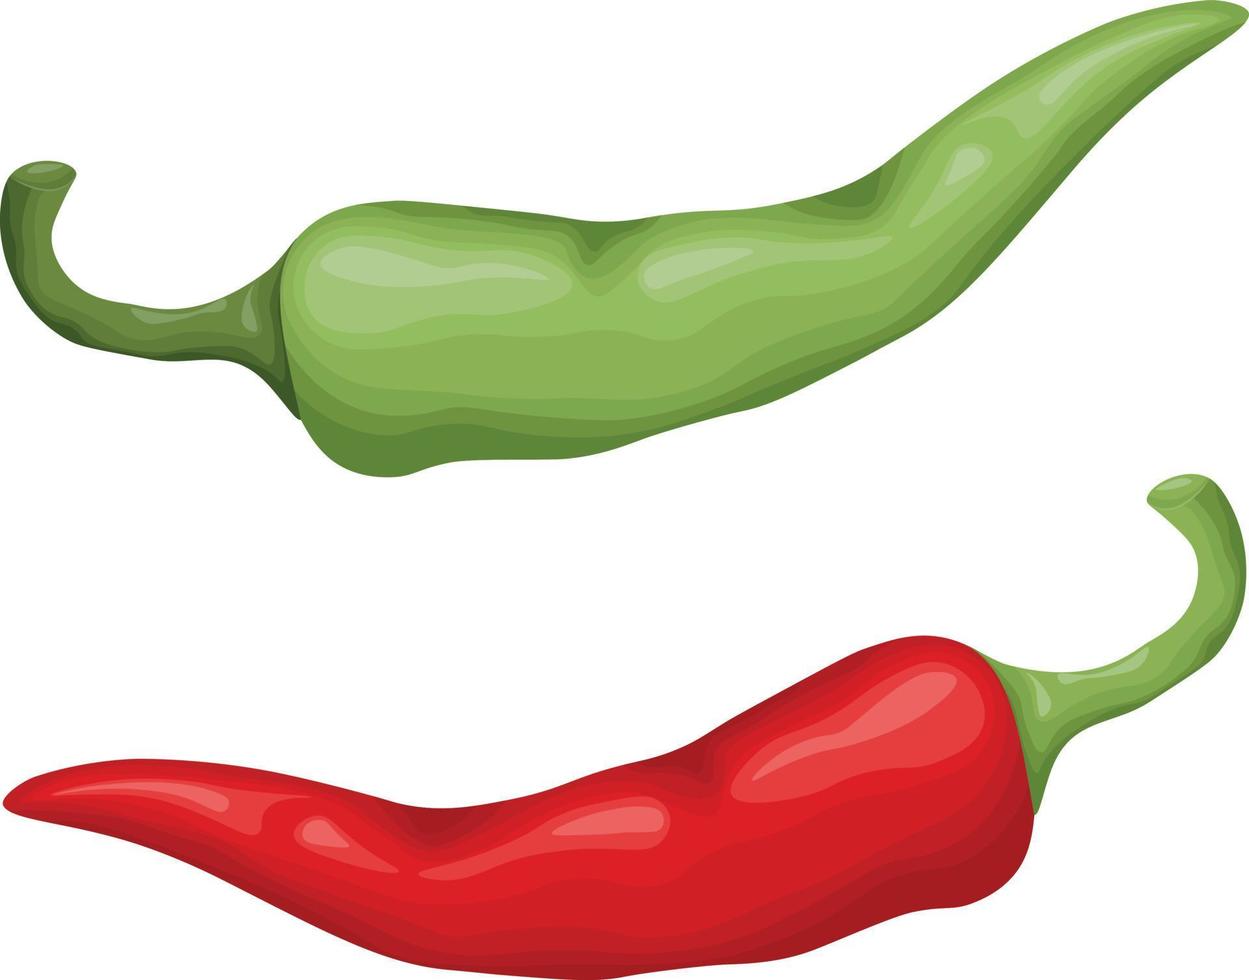 Ají picante. chiles verdes y rojos. pimiento rojo ardiente. una verdura picante. ilustración vectorial aislada en un fondo blanco vector